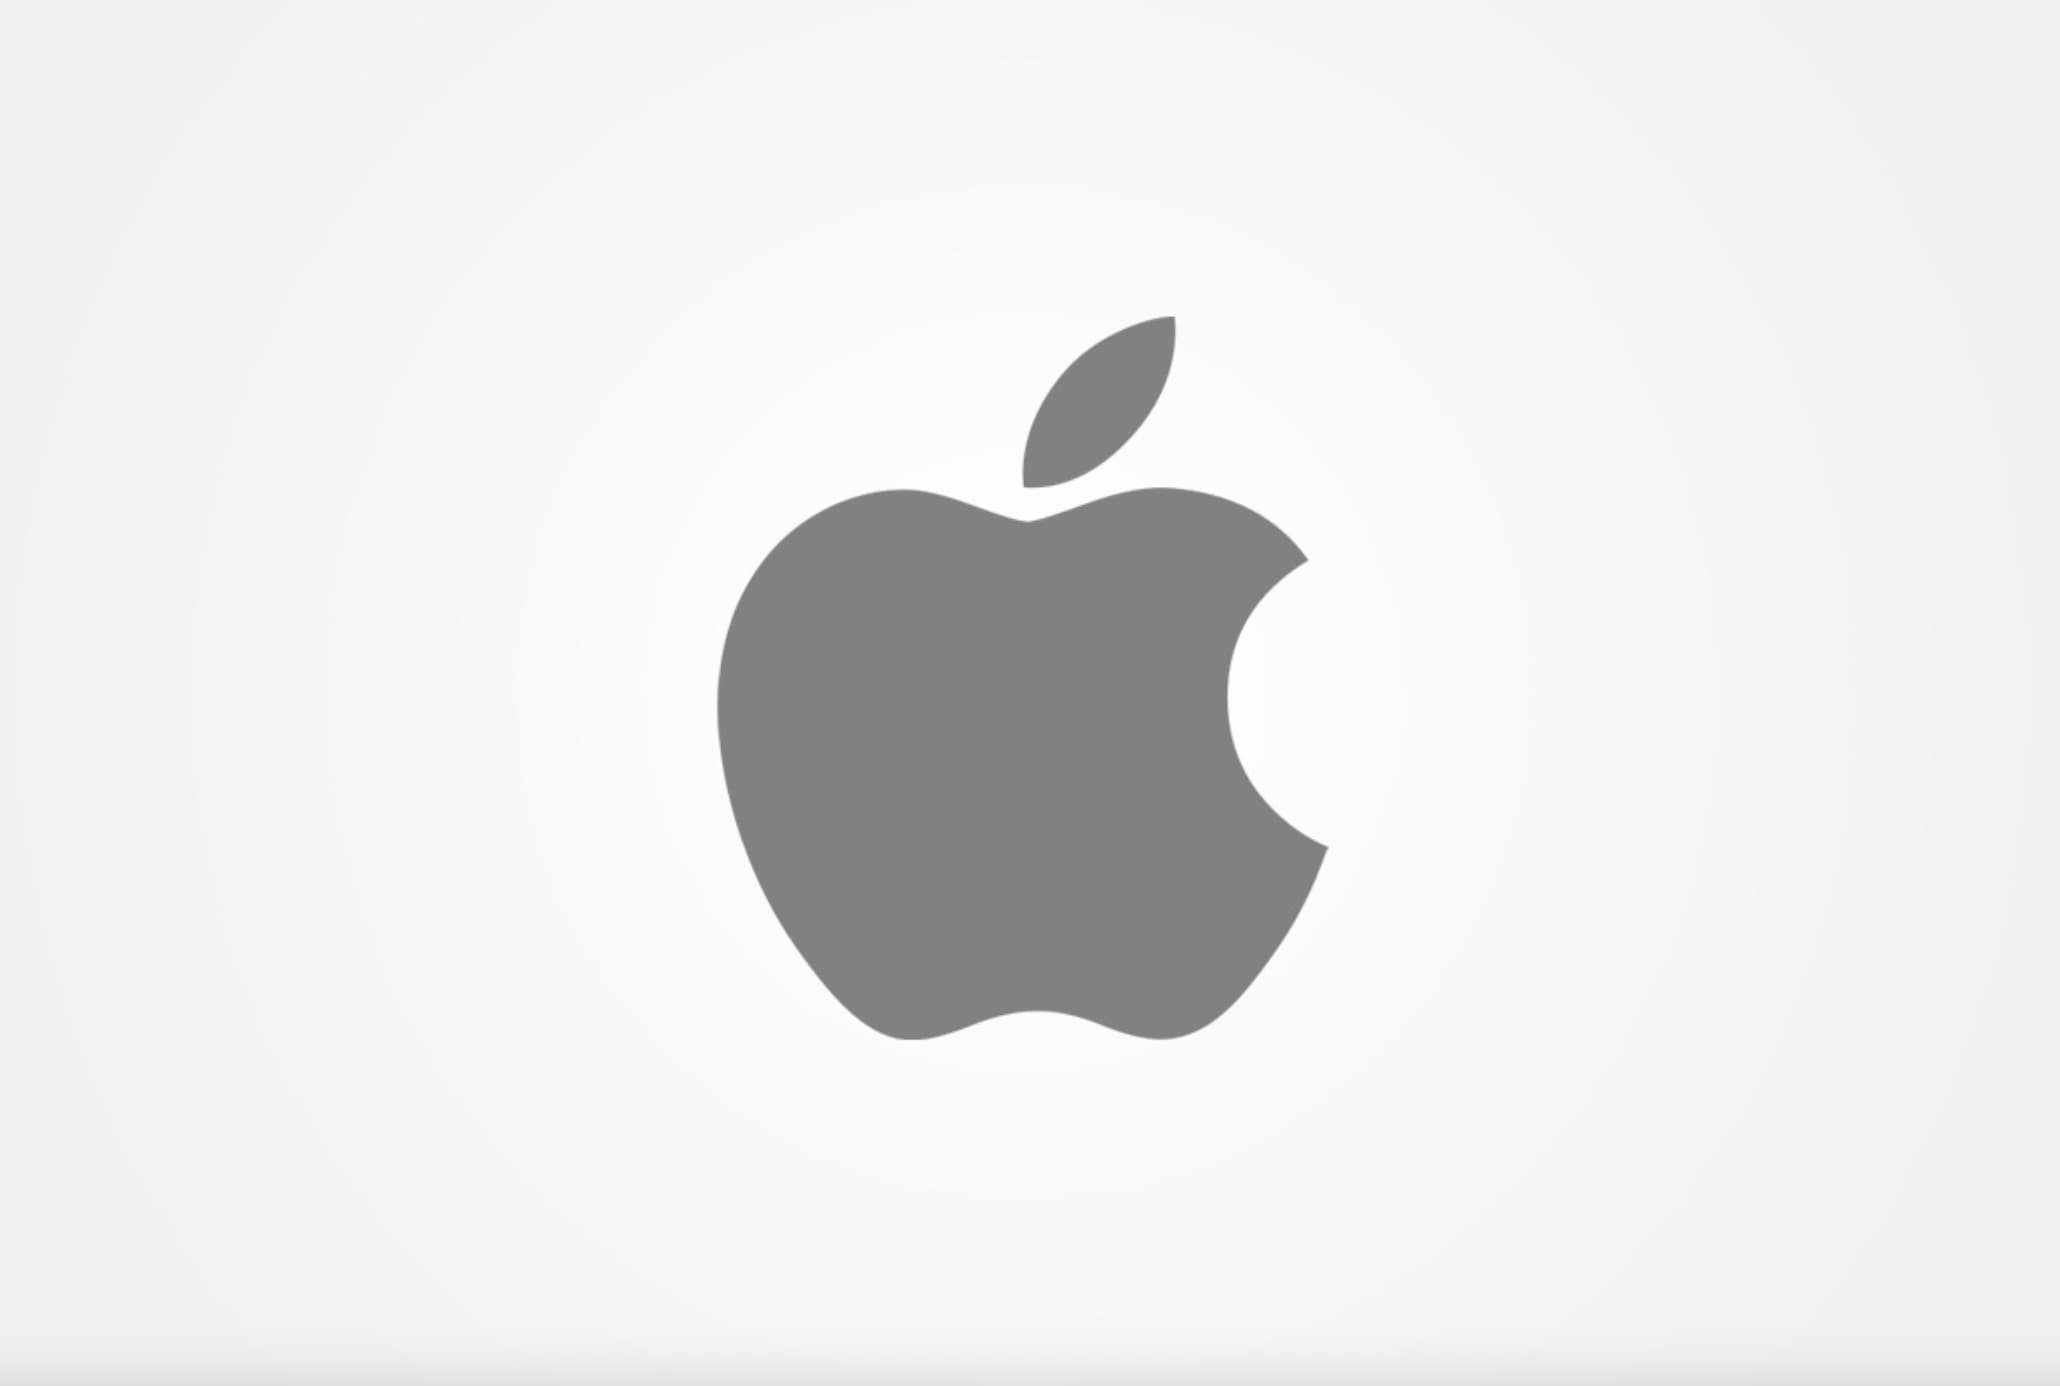 Ejemplo de psicología del color en logo: Apple